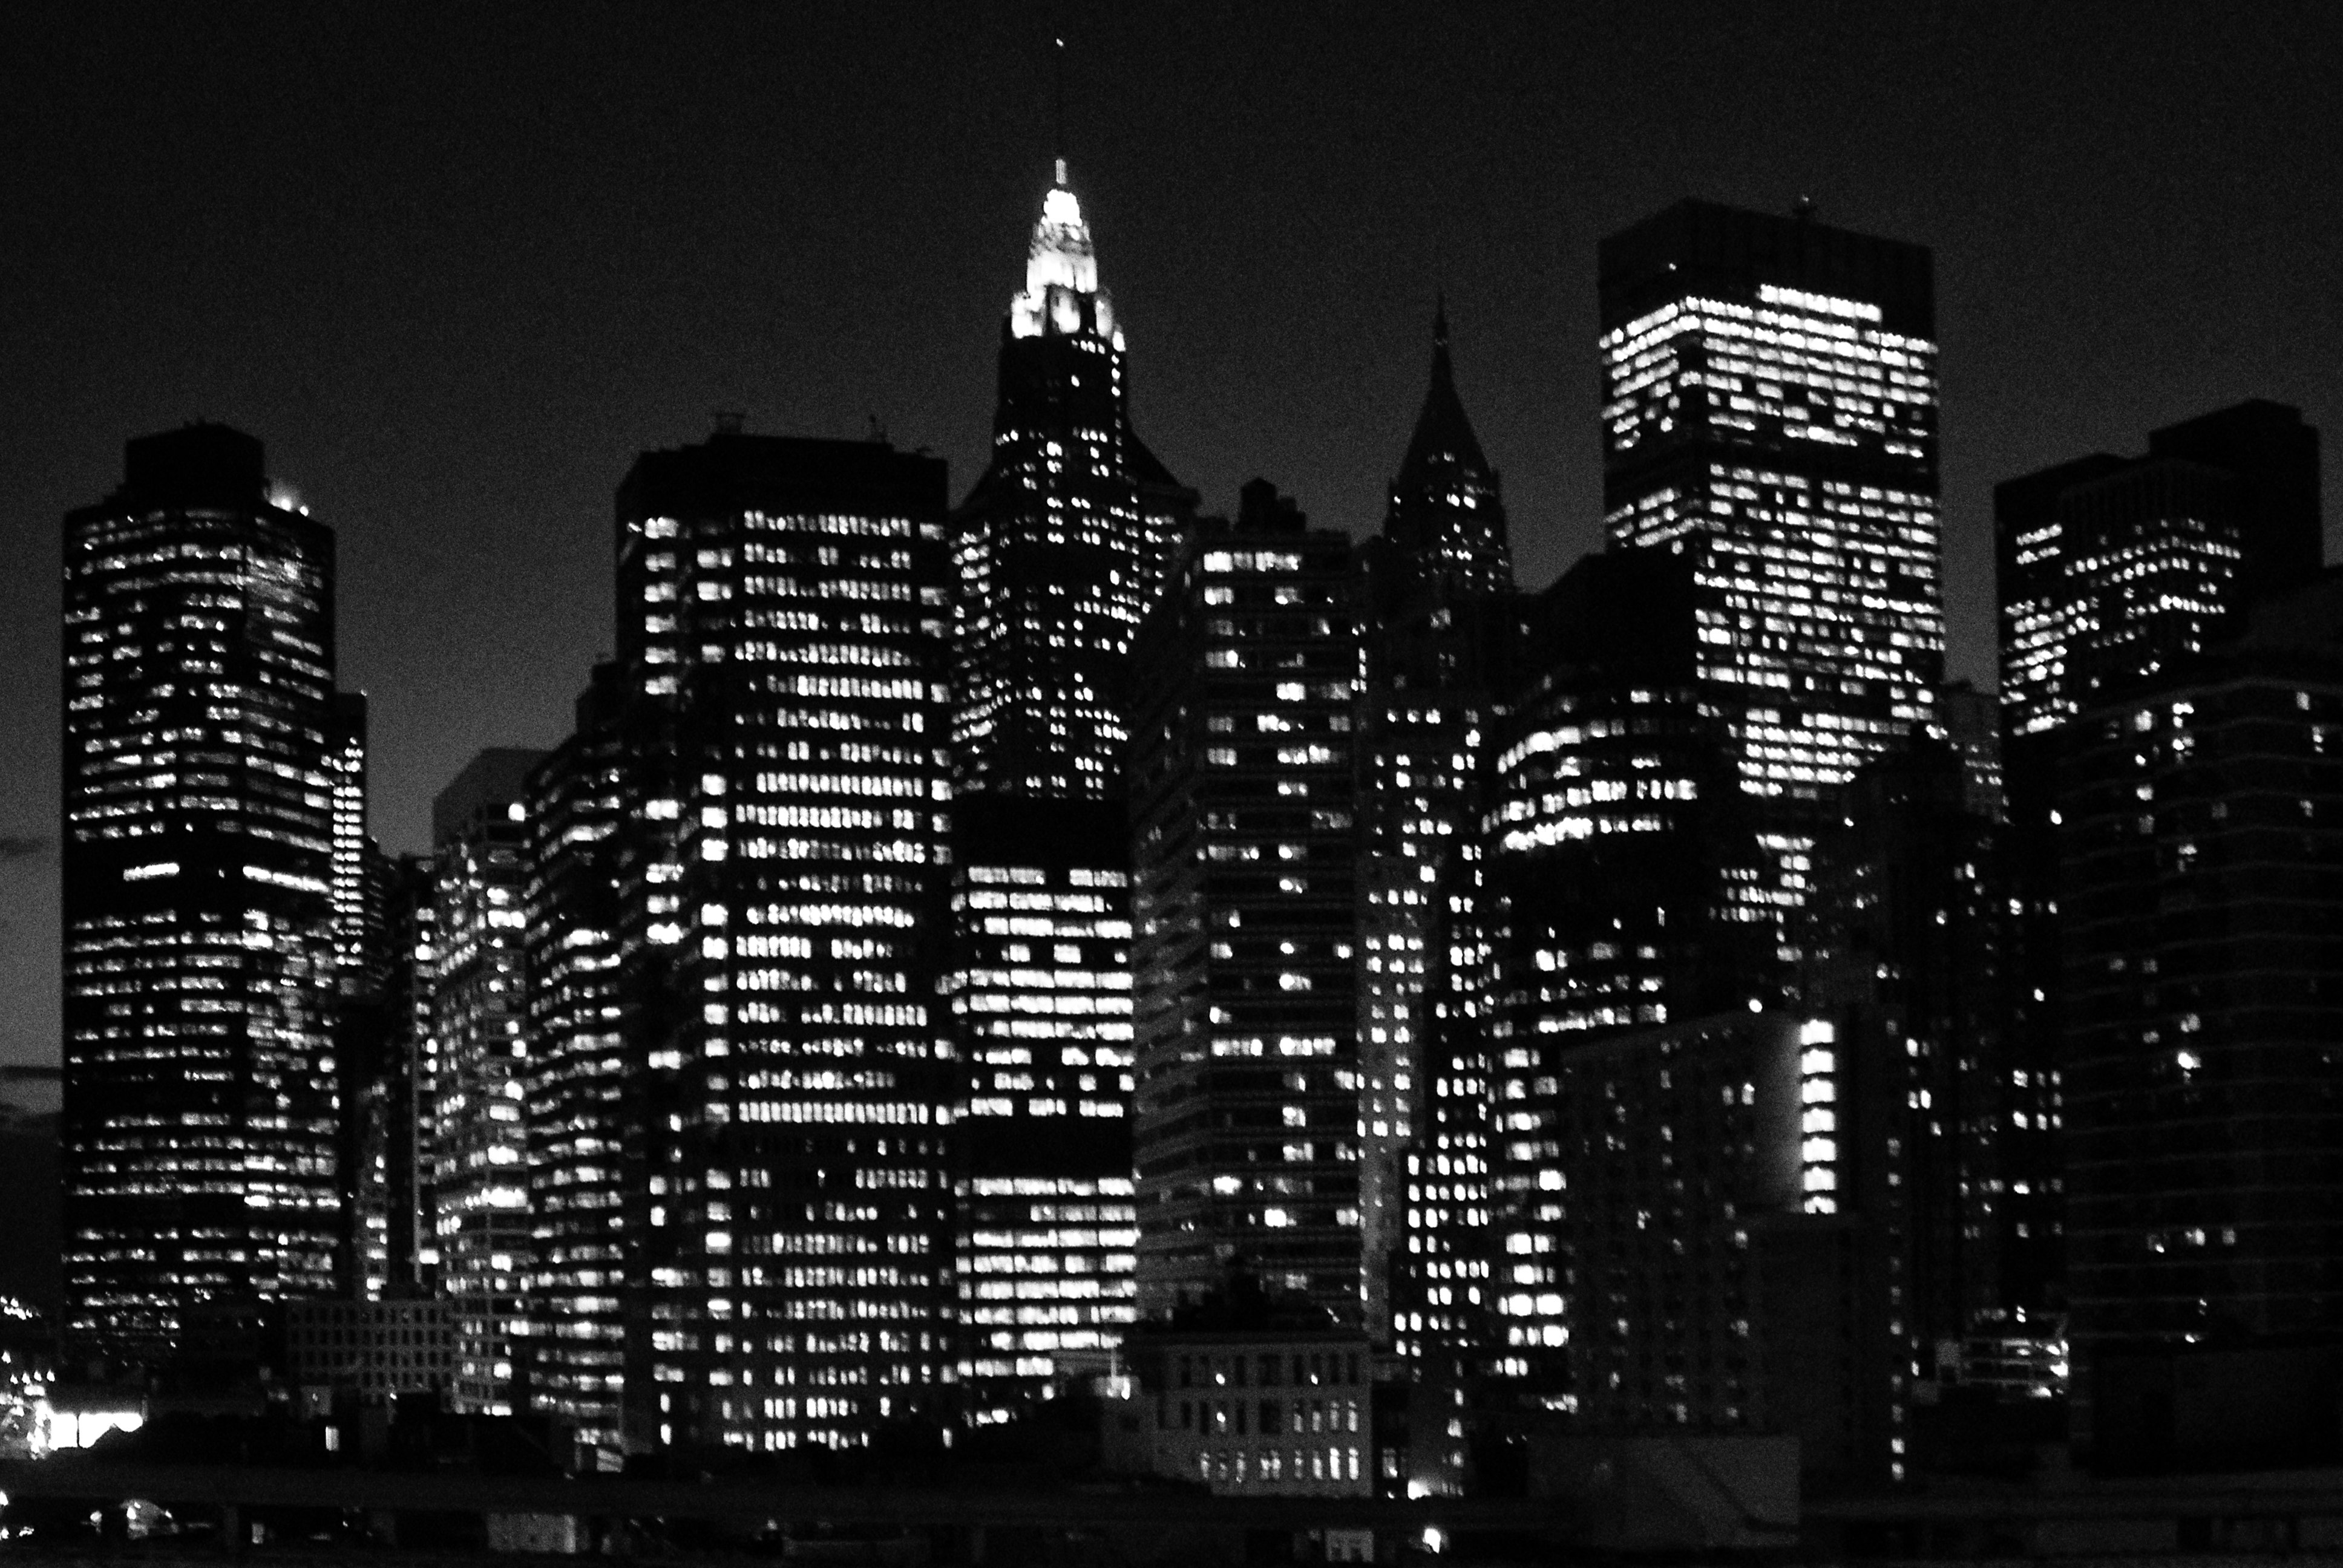 Картинка город черно белая. Тёмный город. Черный город. Ночной город черно белый. Город в черно белом цвете.